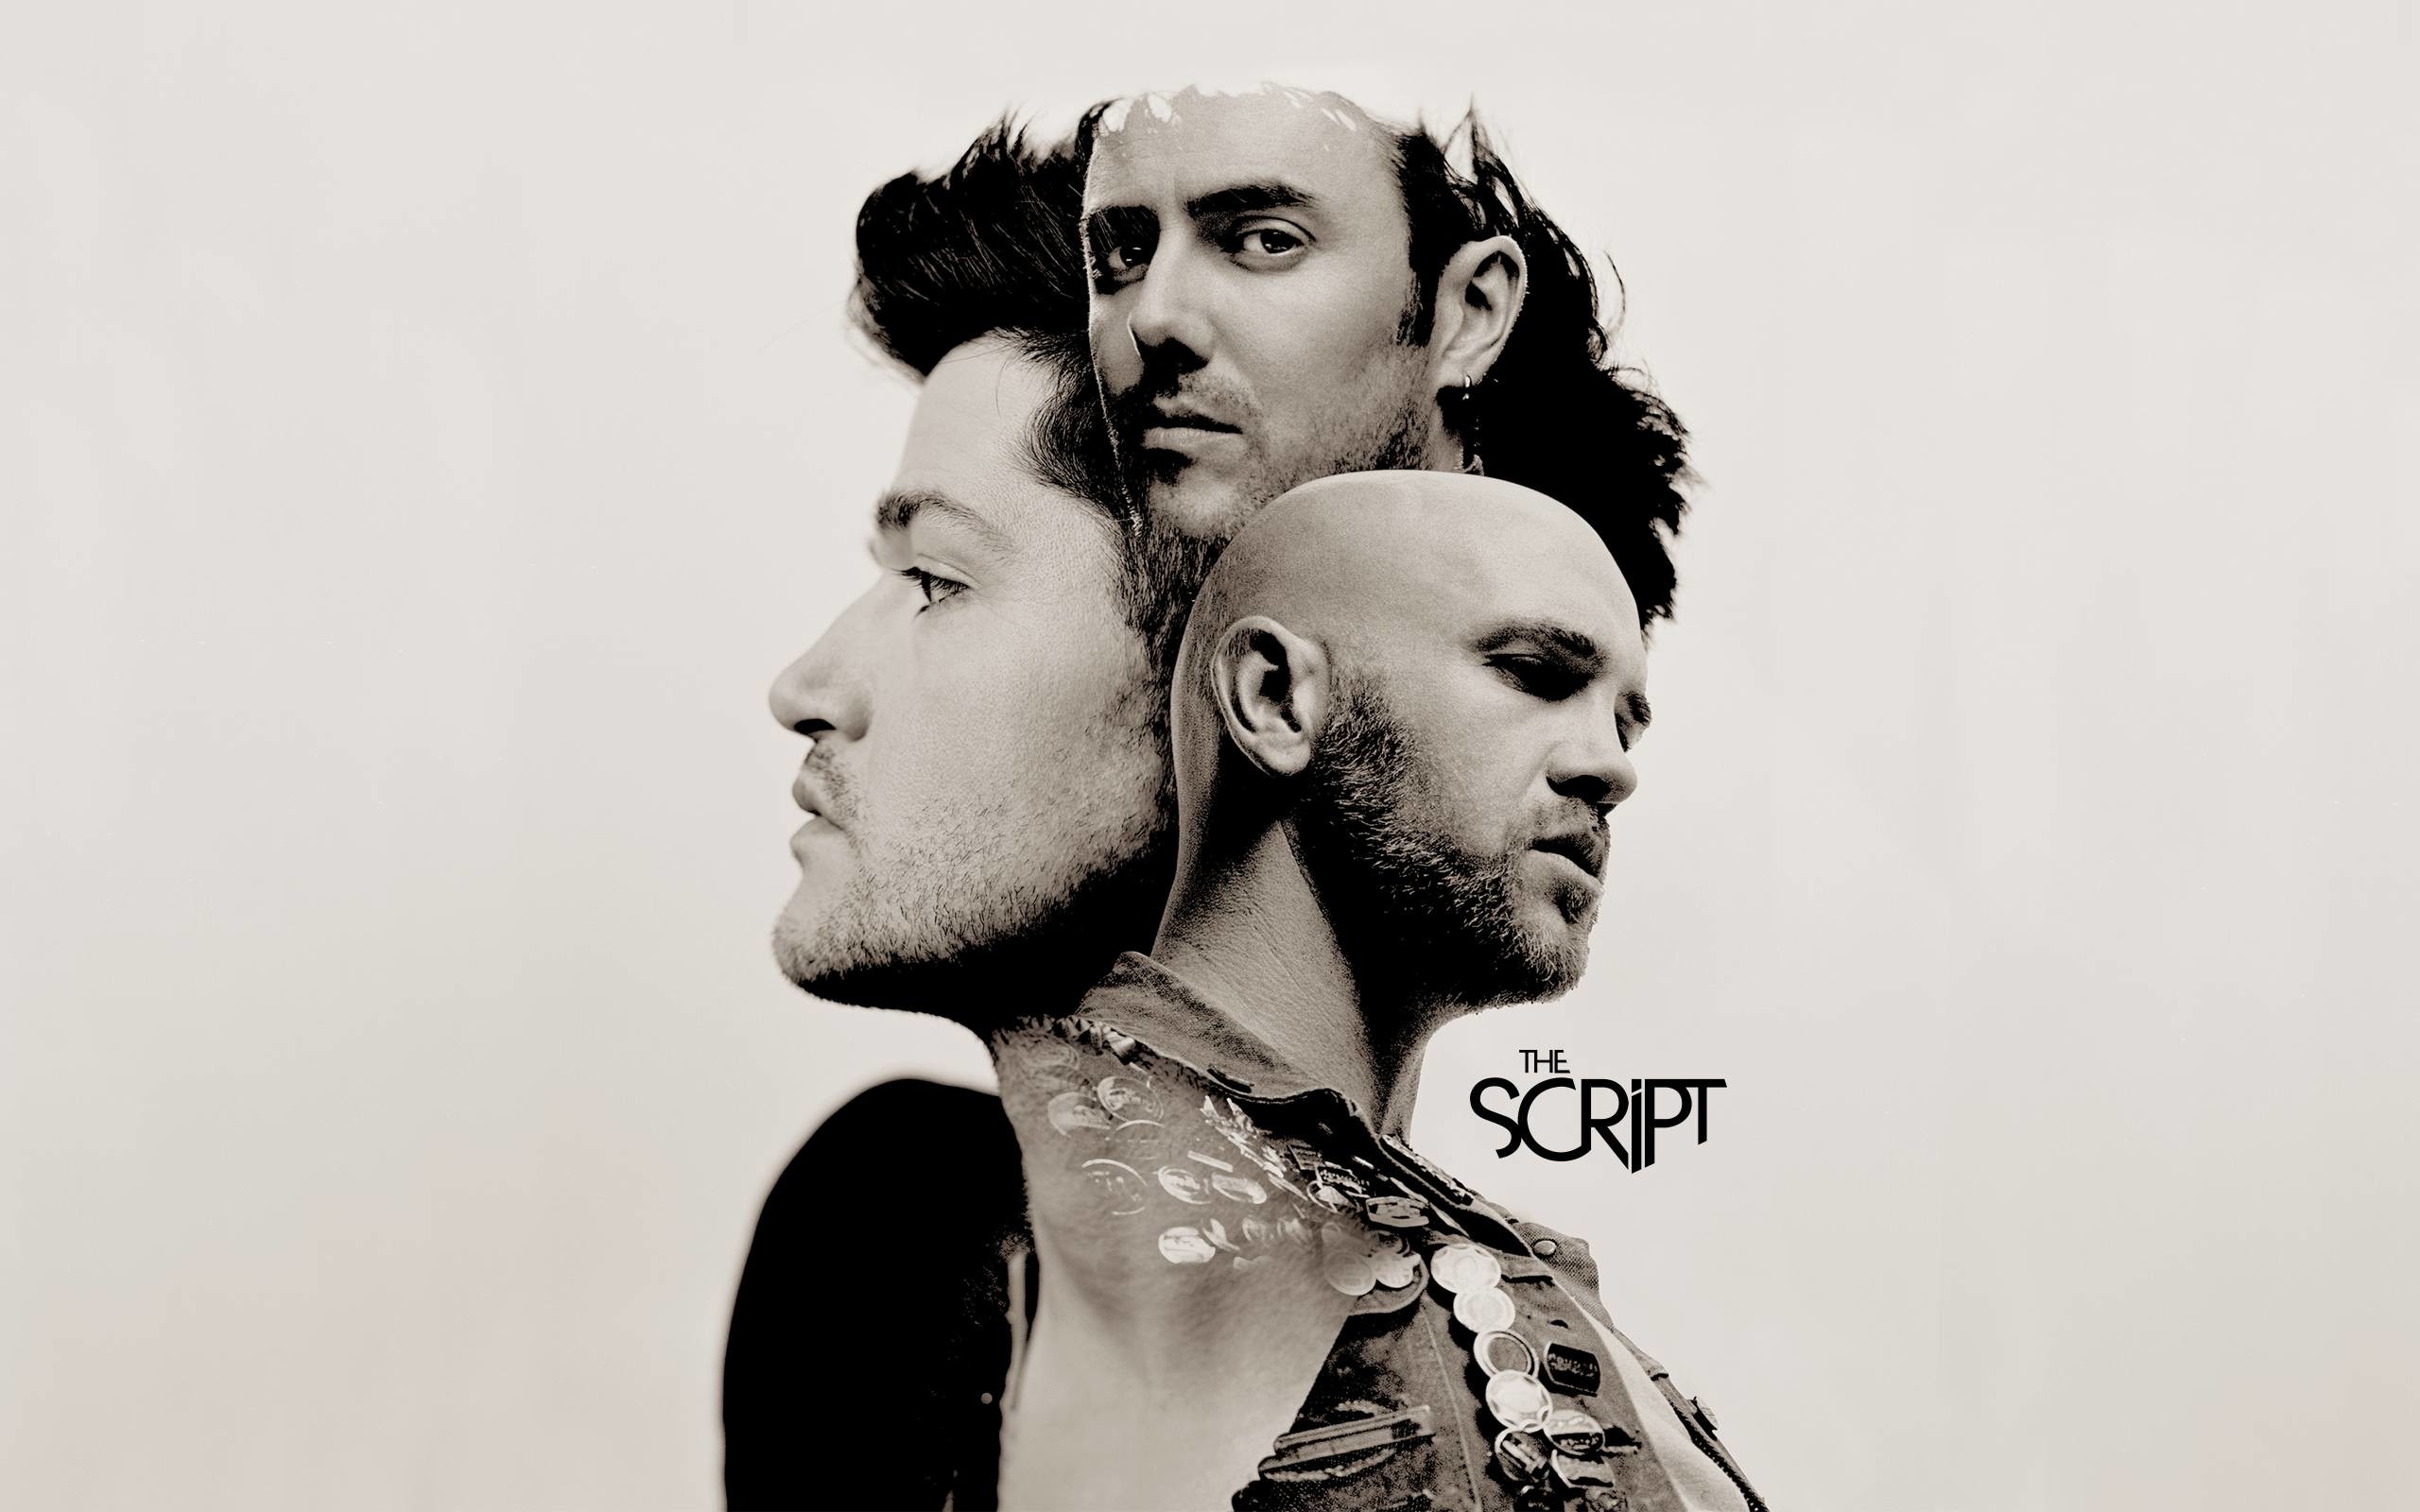 The Script - - 3 The Script Album Cover - HD Wallpaper 